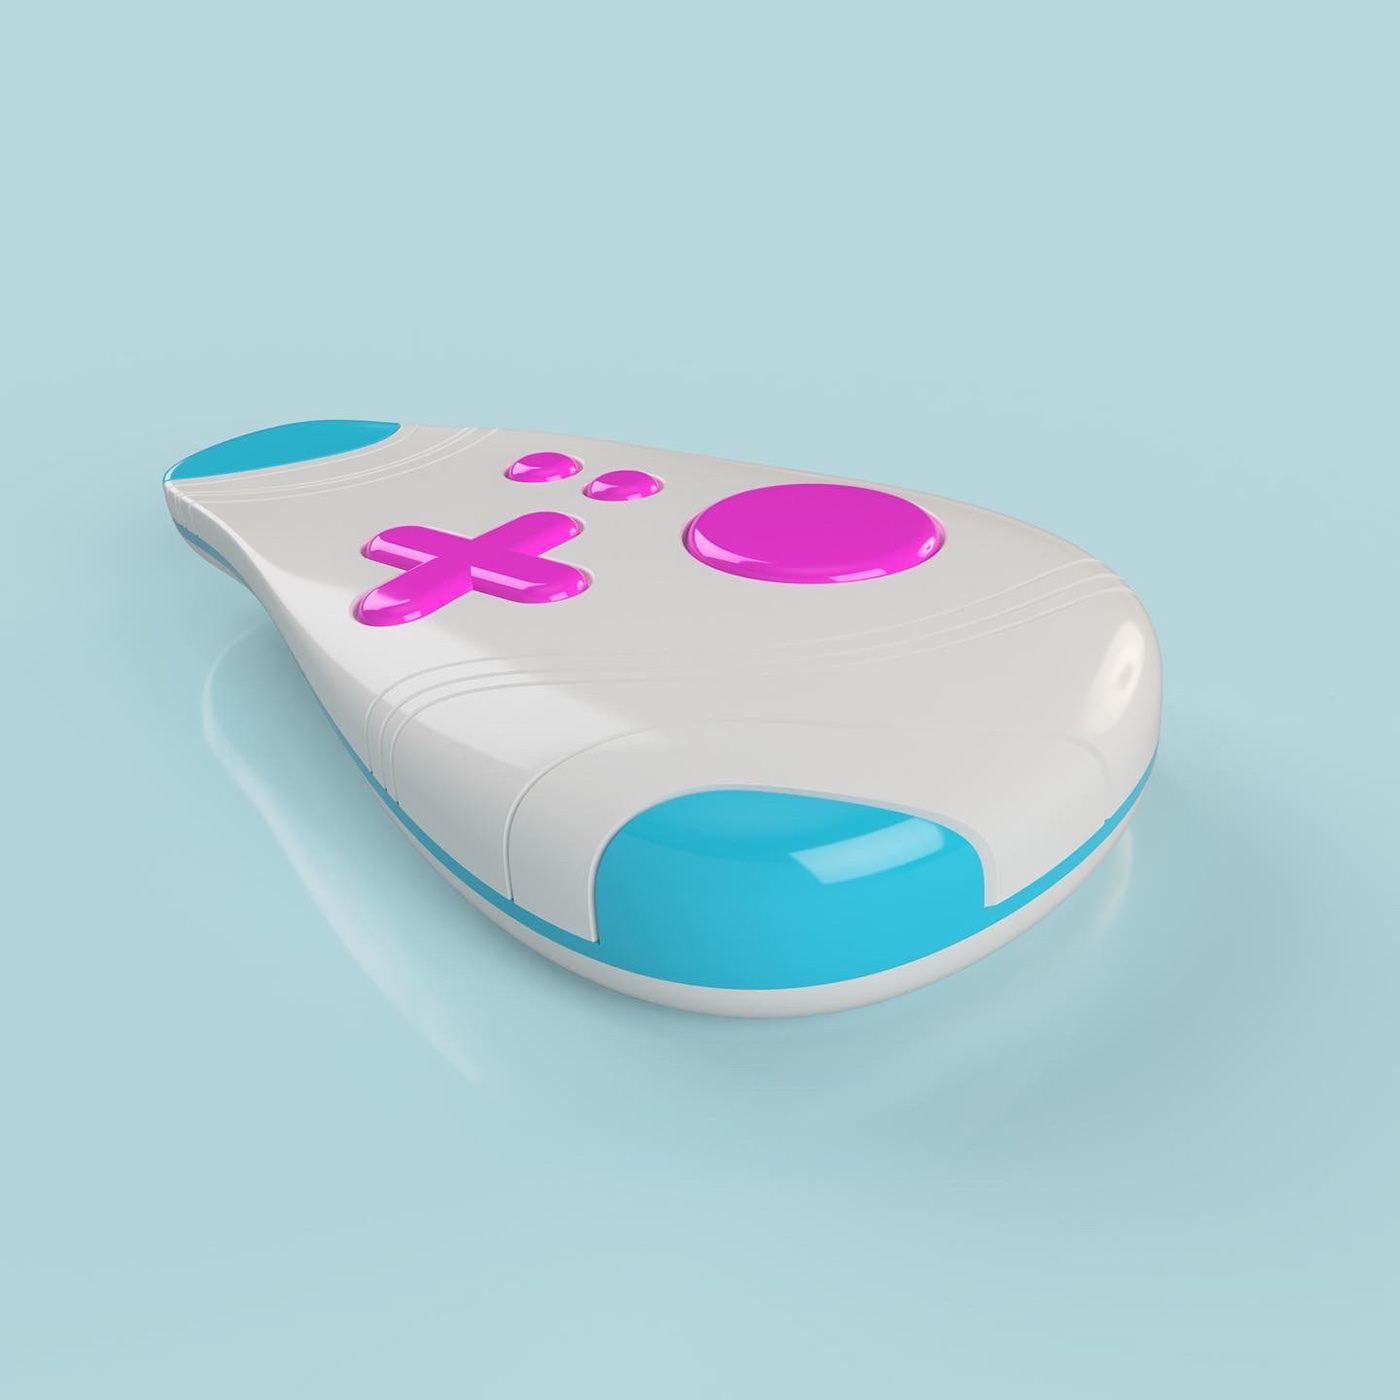 3d modeling colorful design designer Karim Rashid Memphis product design  Remote Control Render